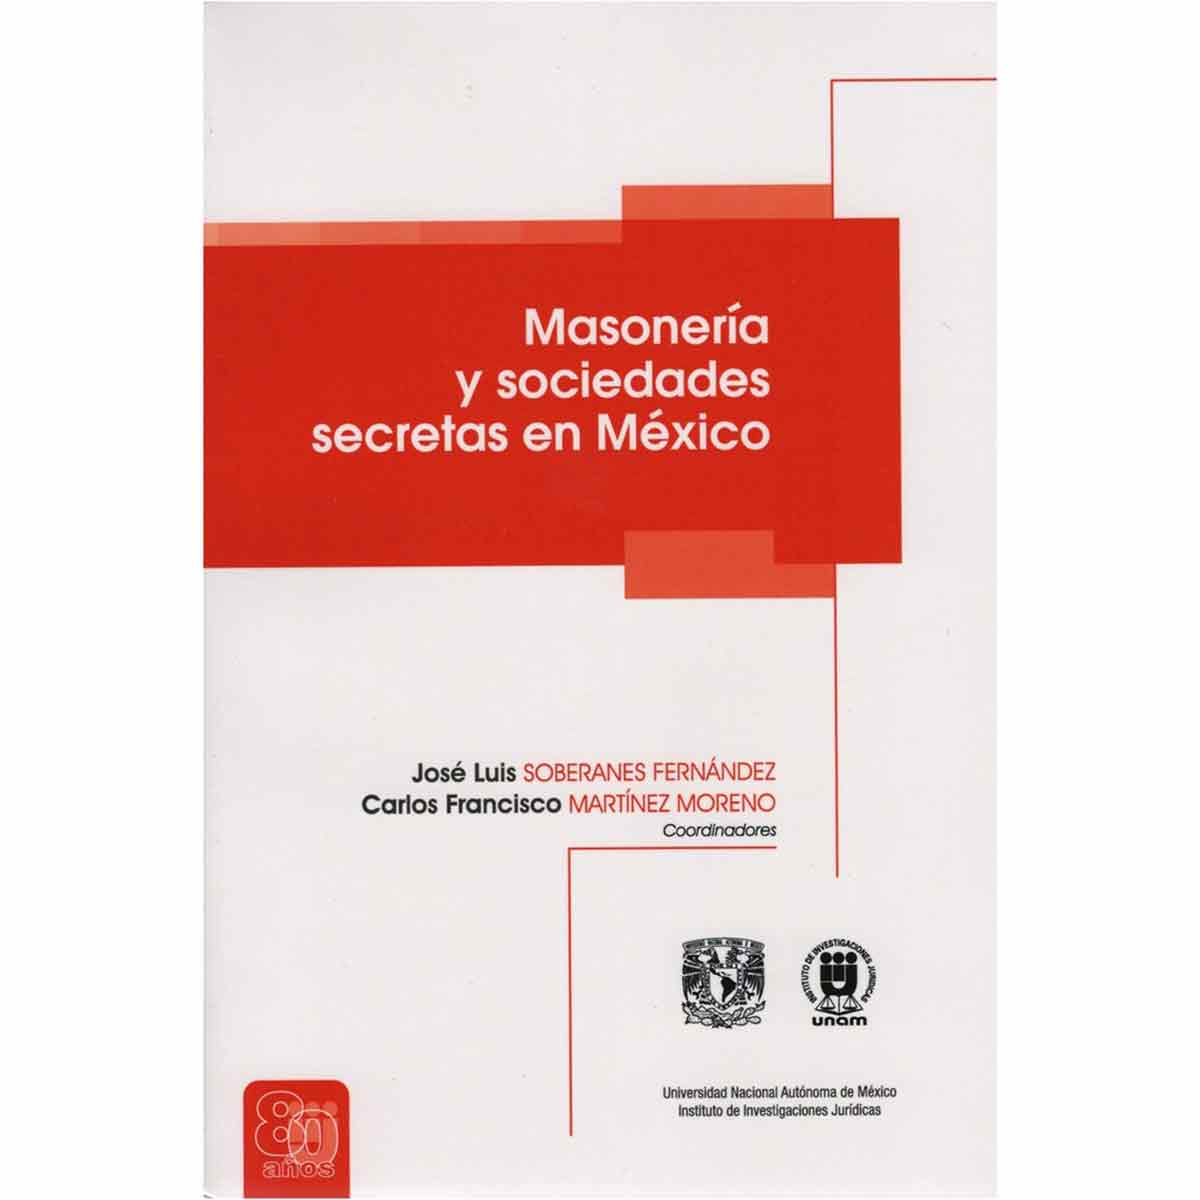 Imagen de portada del libro Masonería y sociedades secretas en México